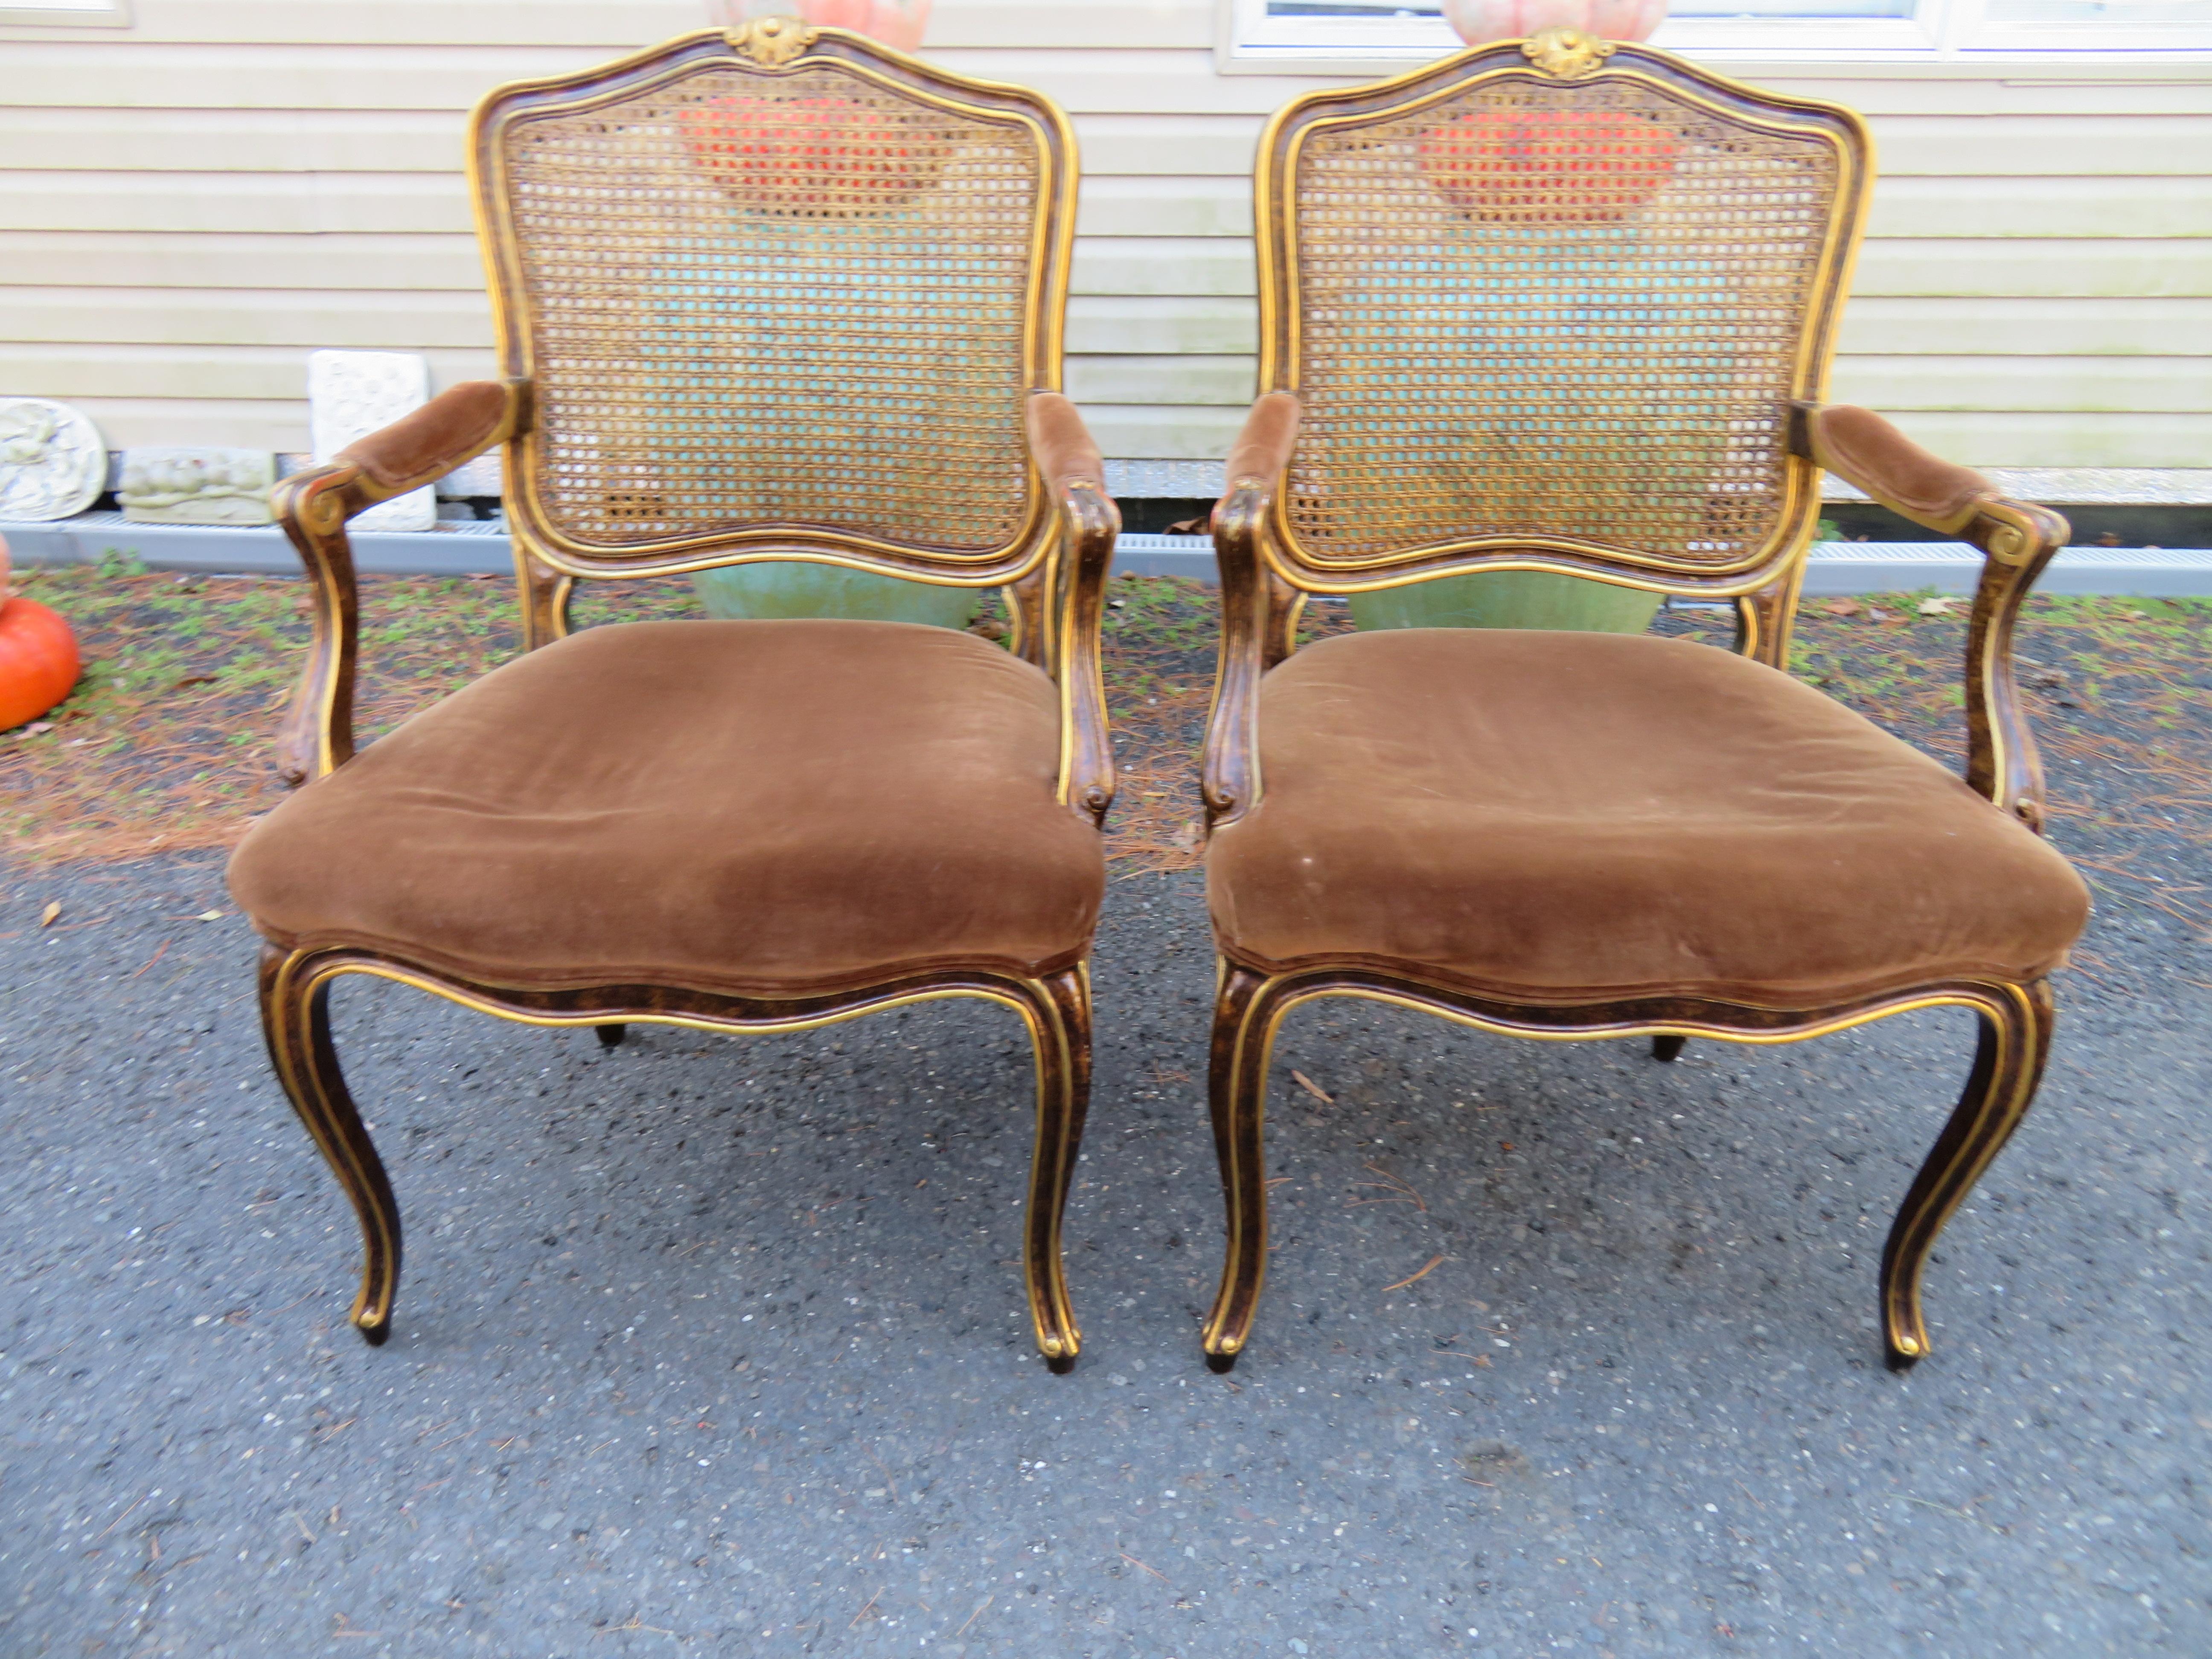 Spektakuläres Paar John Widdicomb Fauteuils Louis XV Stühle mit Rohrrücken. Wir lieben die atemberaubende Originalausführung in Schildpatt mit goldenen Details. Diese Stühle haben ihren ursprünglichen schokoladenbraunen Samt in vorzeigbarem Zustand